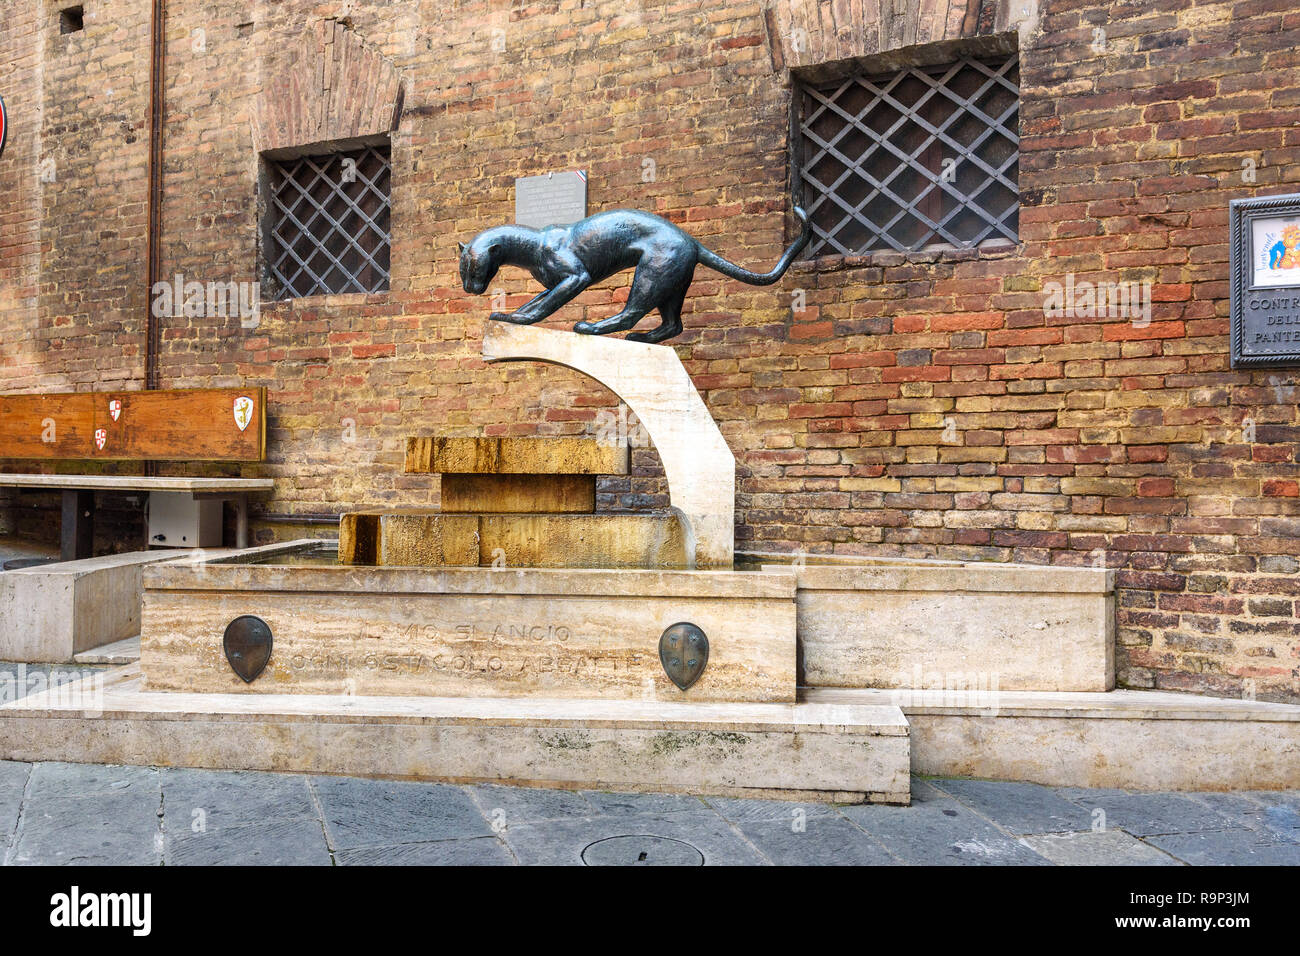 Siena, Italia - Octubre 02, 2018: Fontain Contrada della Pantera en Piazza del Conte en el casco antiguo de la ciudad Siena Foto de stock